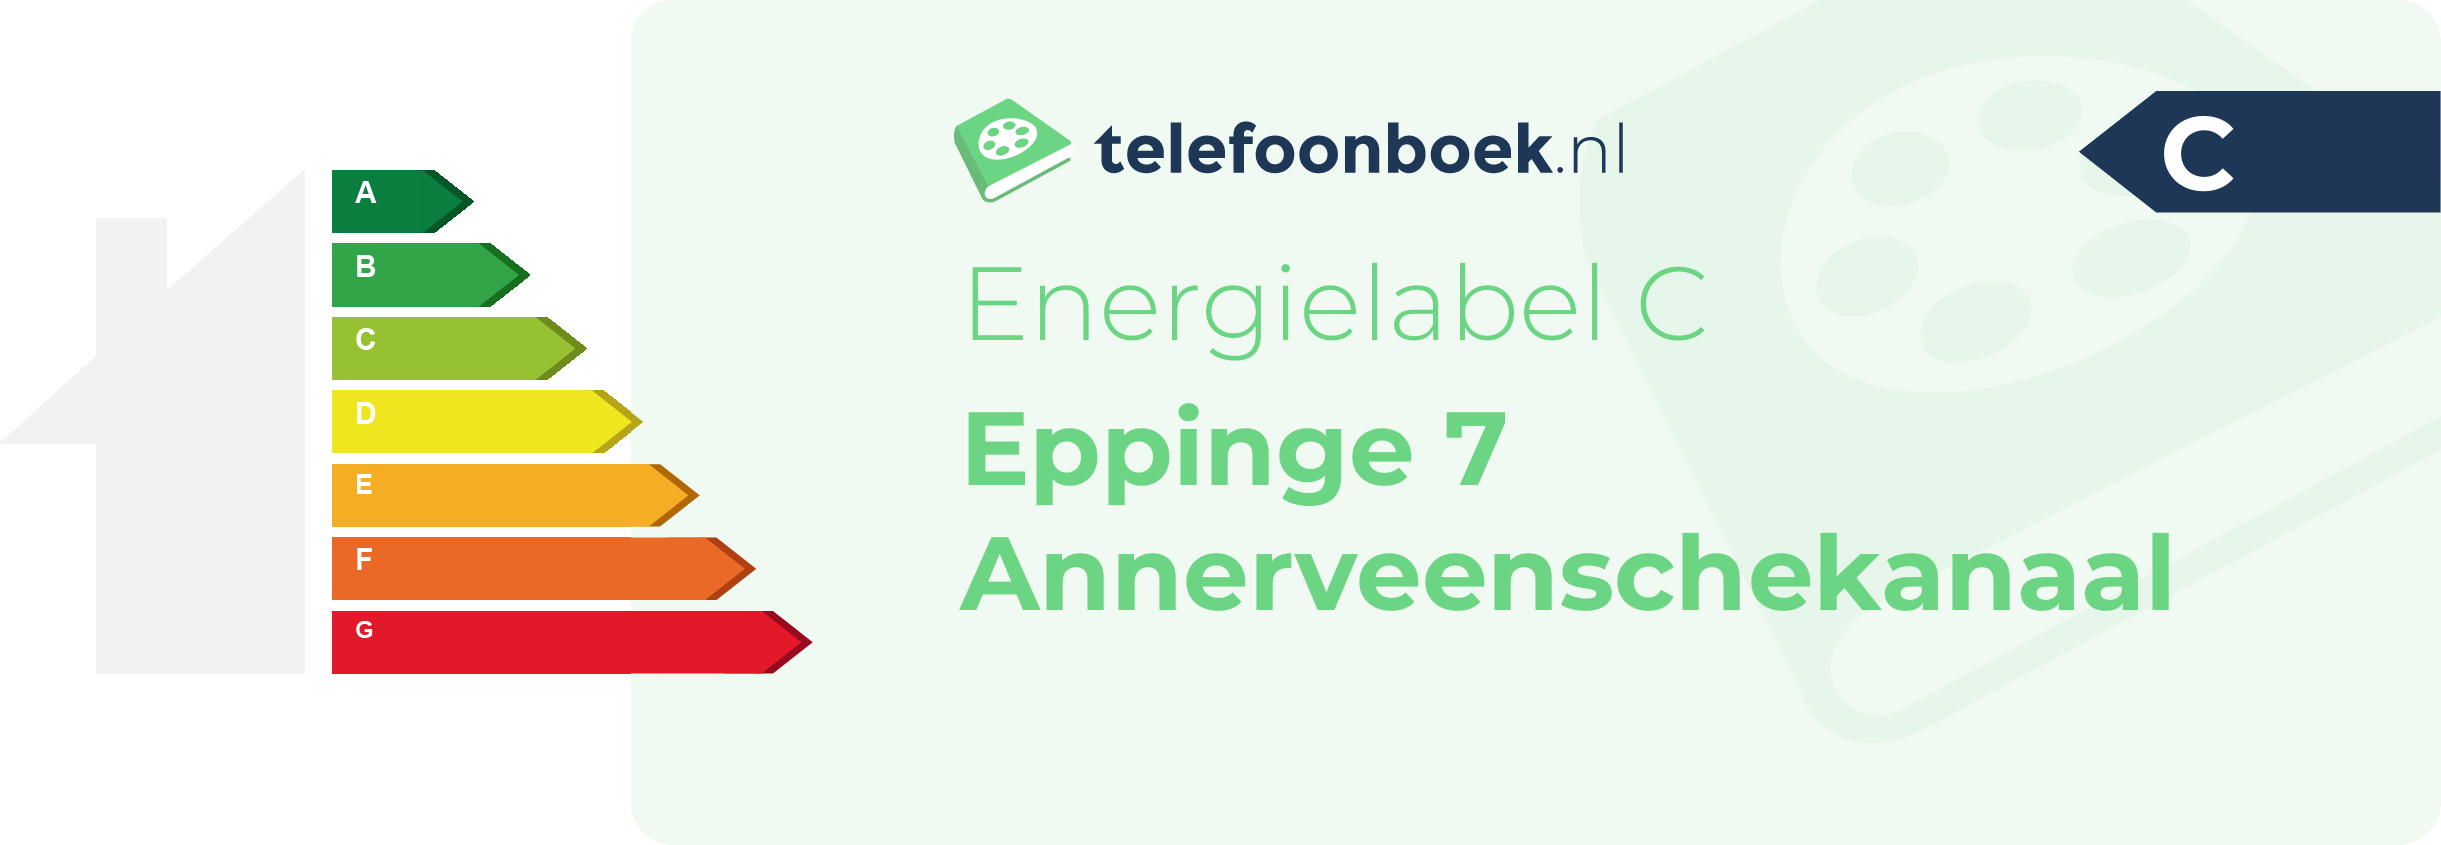 Energielabel Eppinge 7 Annerveenschekanaal